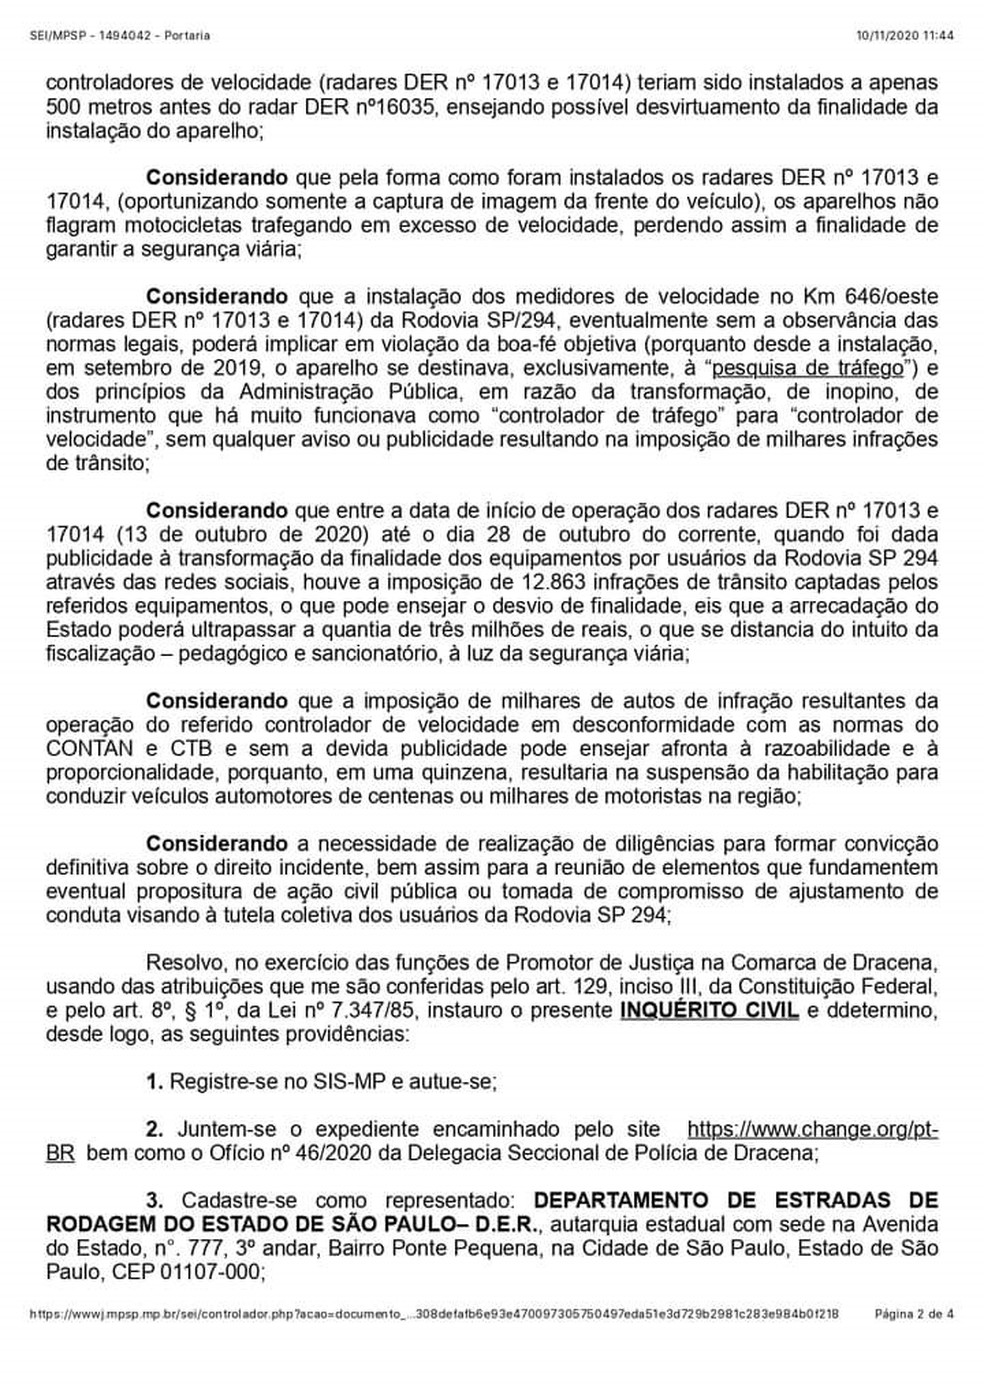 MPE abriu inquérito para apurar supostas irregularidades na instalação de radares em Dracena — Foto: Reprodução